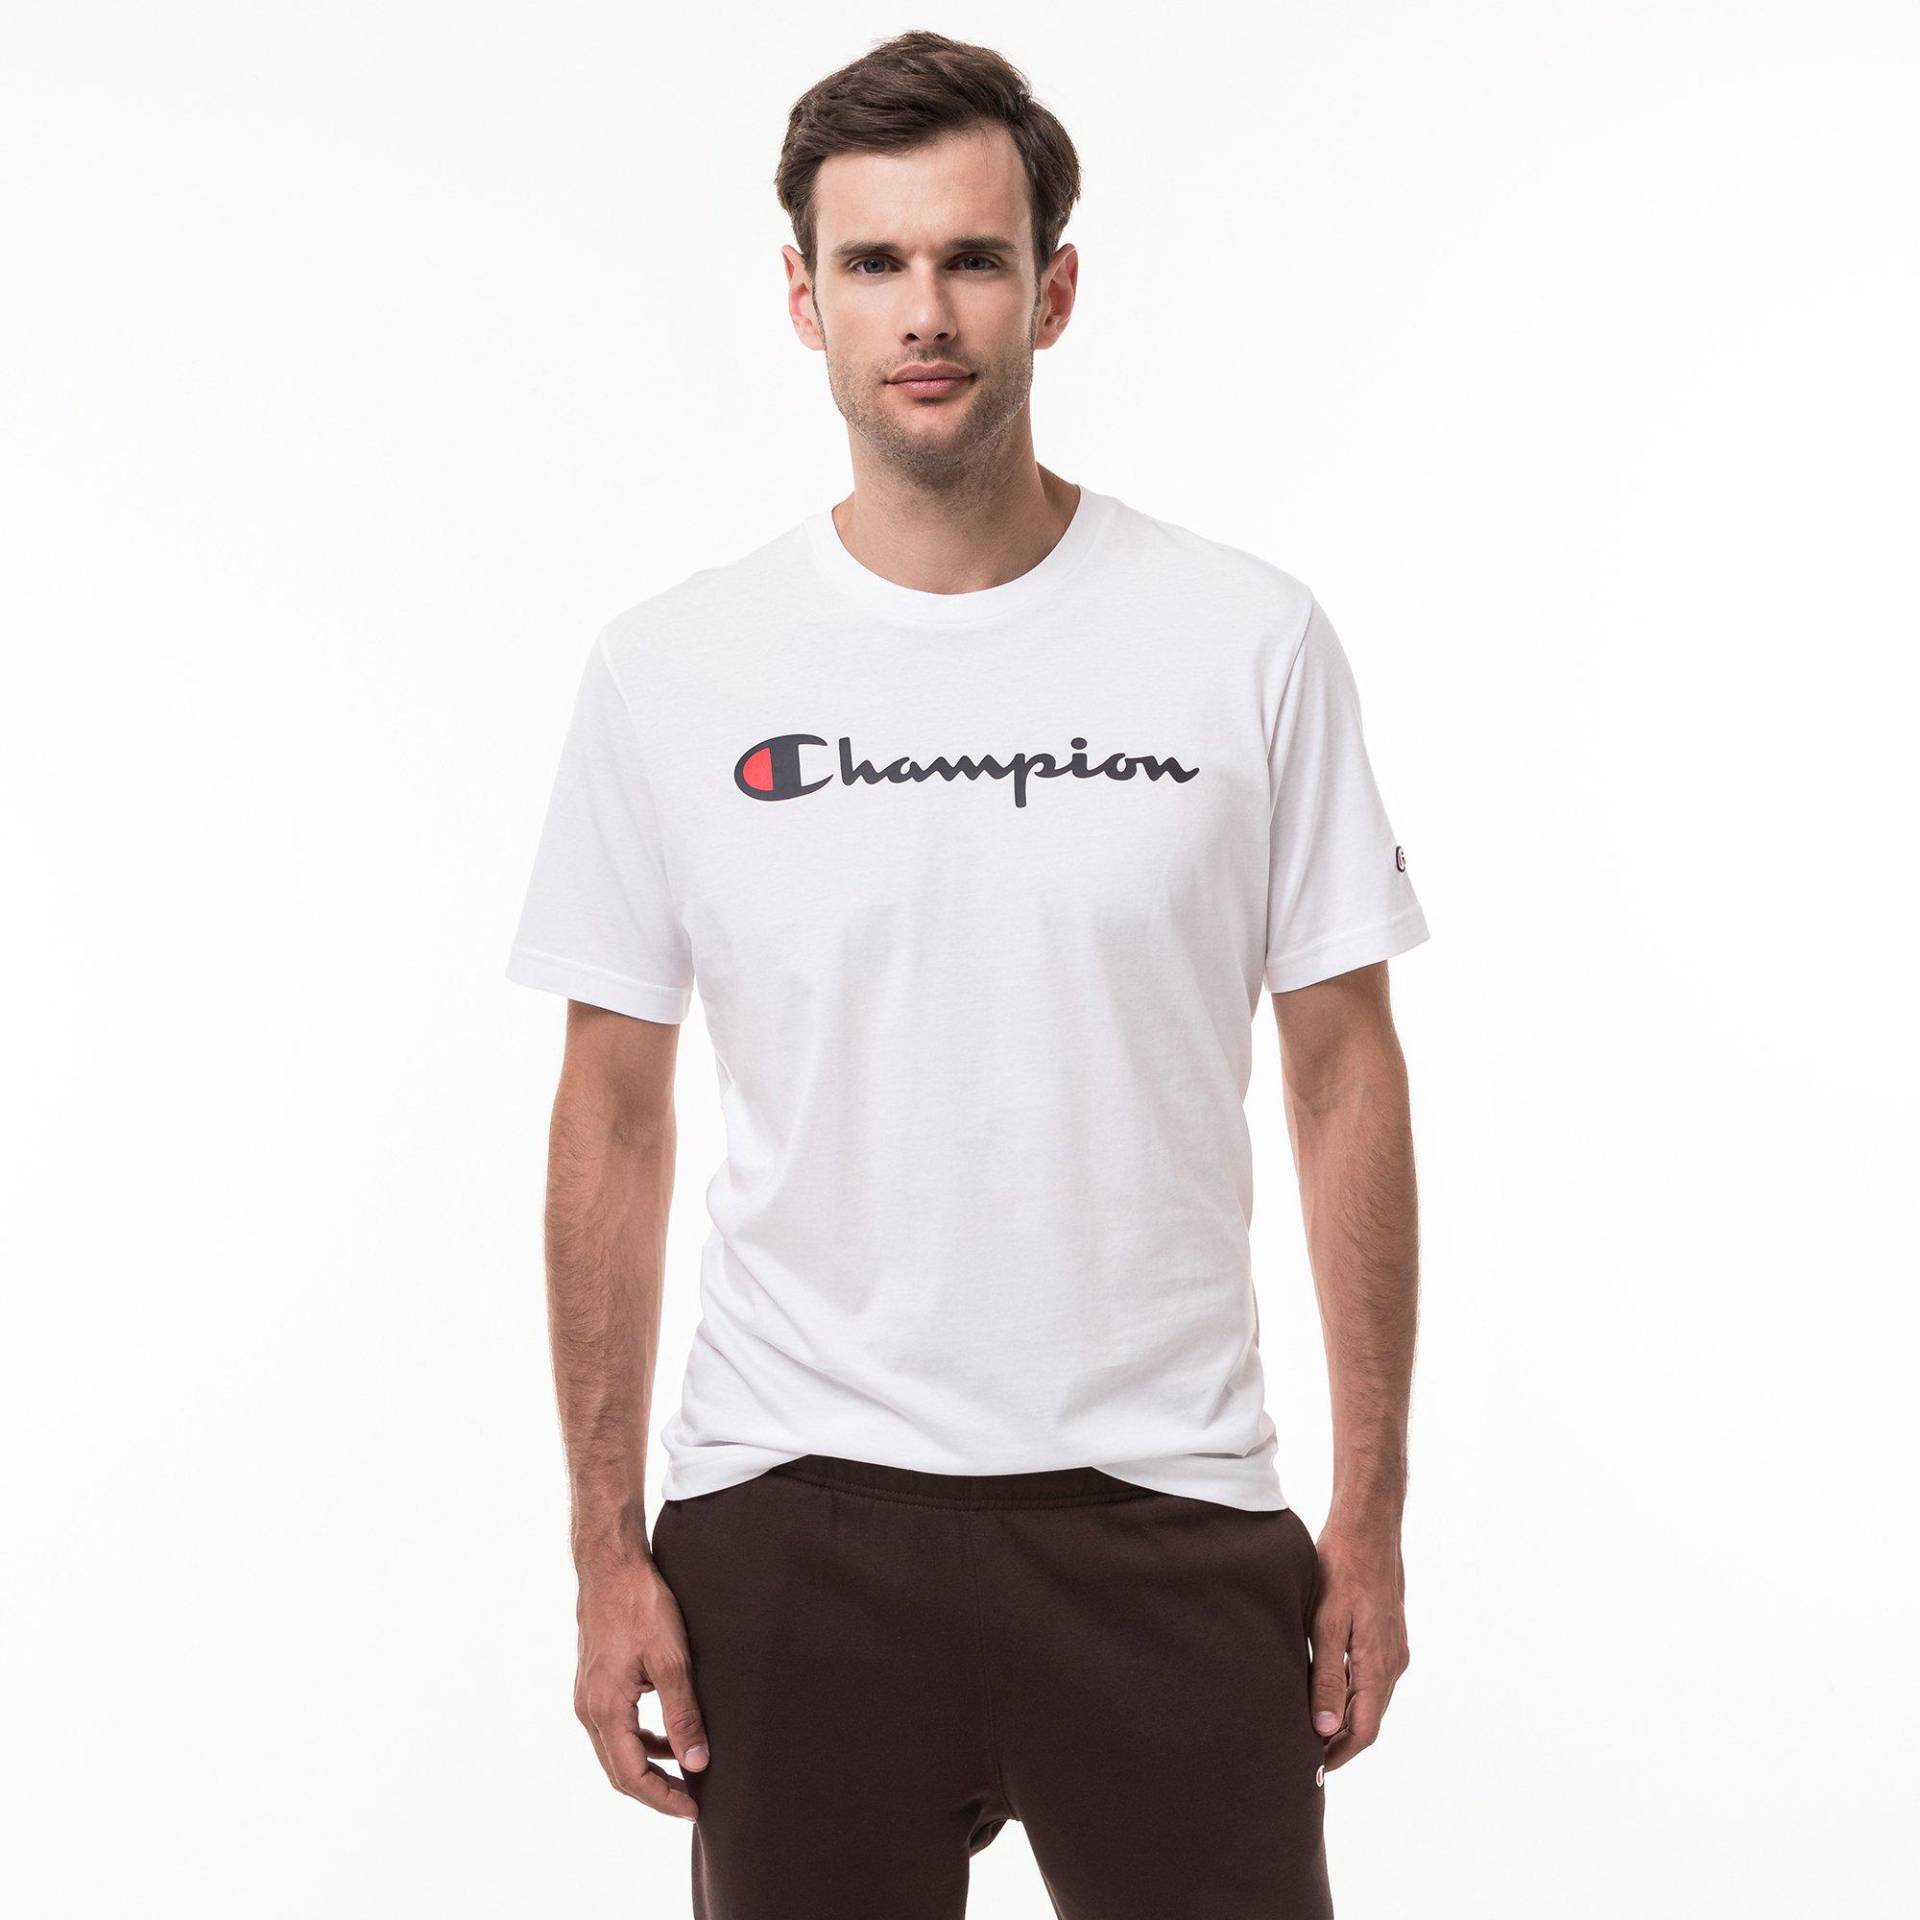 T-shirt Herren Weiss S von Champion